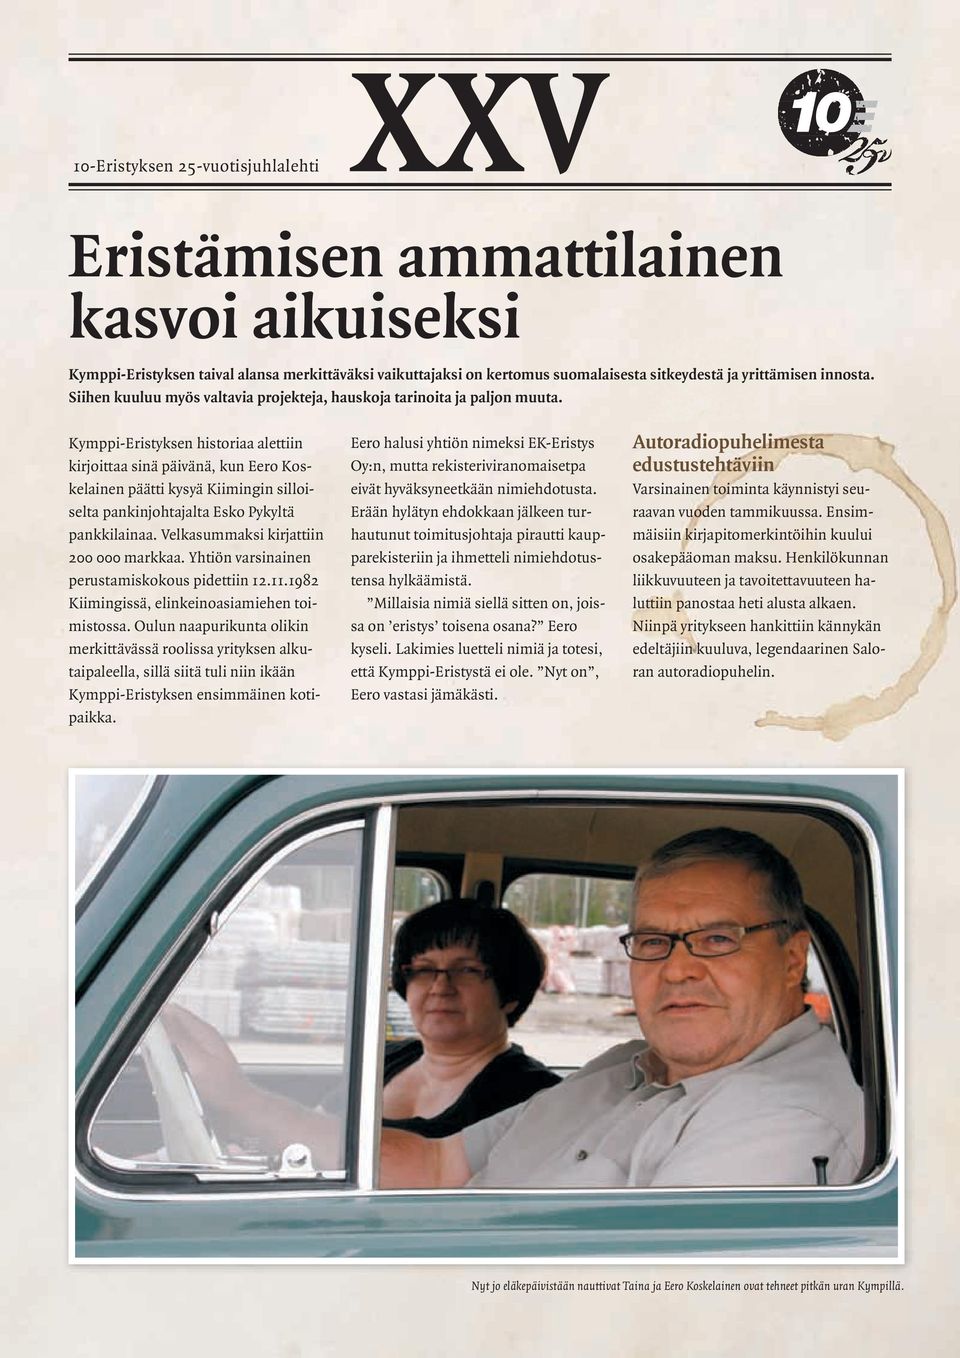 Kymppi-Eristyksen historiaa alettiin kirjoittaa sinä päivänä, kun Eero Koskelainen päätti kysyä Kiimingin silloiselta pankinjohtajalta Esko Pykyltä pankkilainaa.